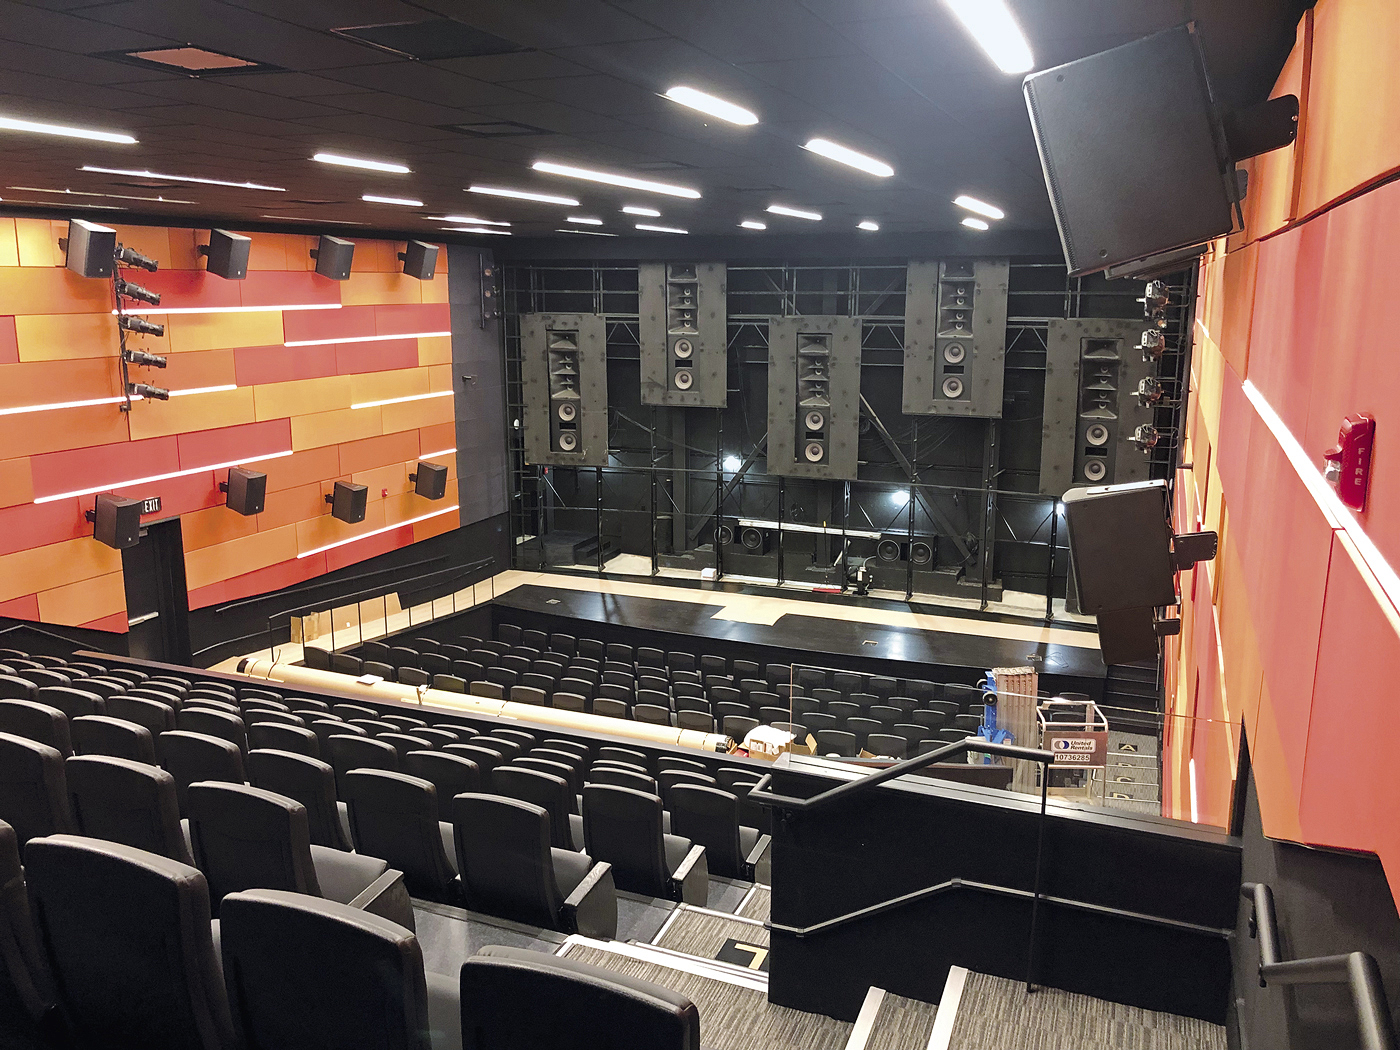 L'installazione AV è progettata per evitare interferenze con i sistemi di proiezione e altoparlanti della sala Cinemark.